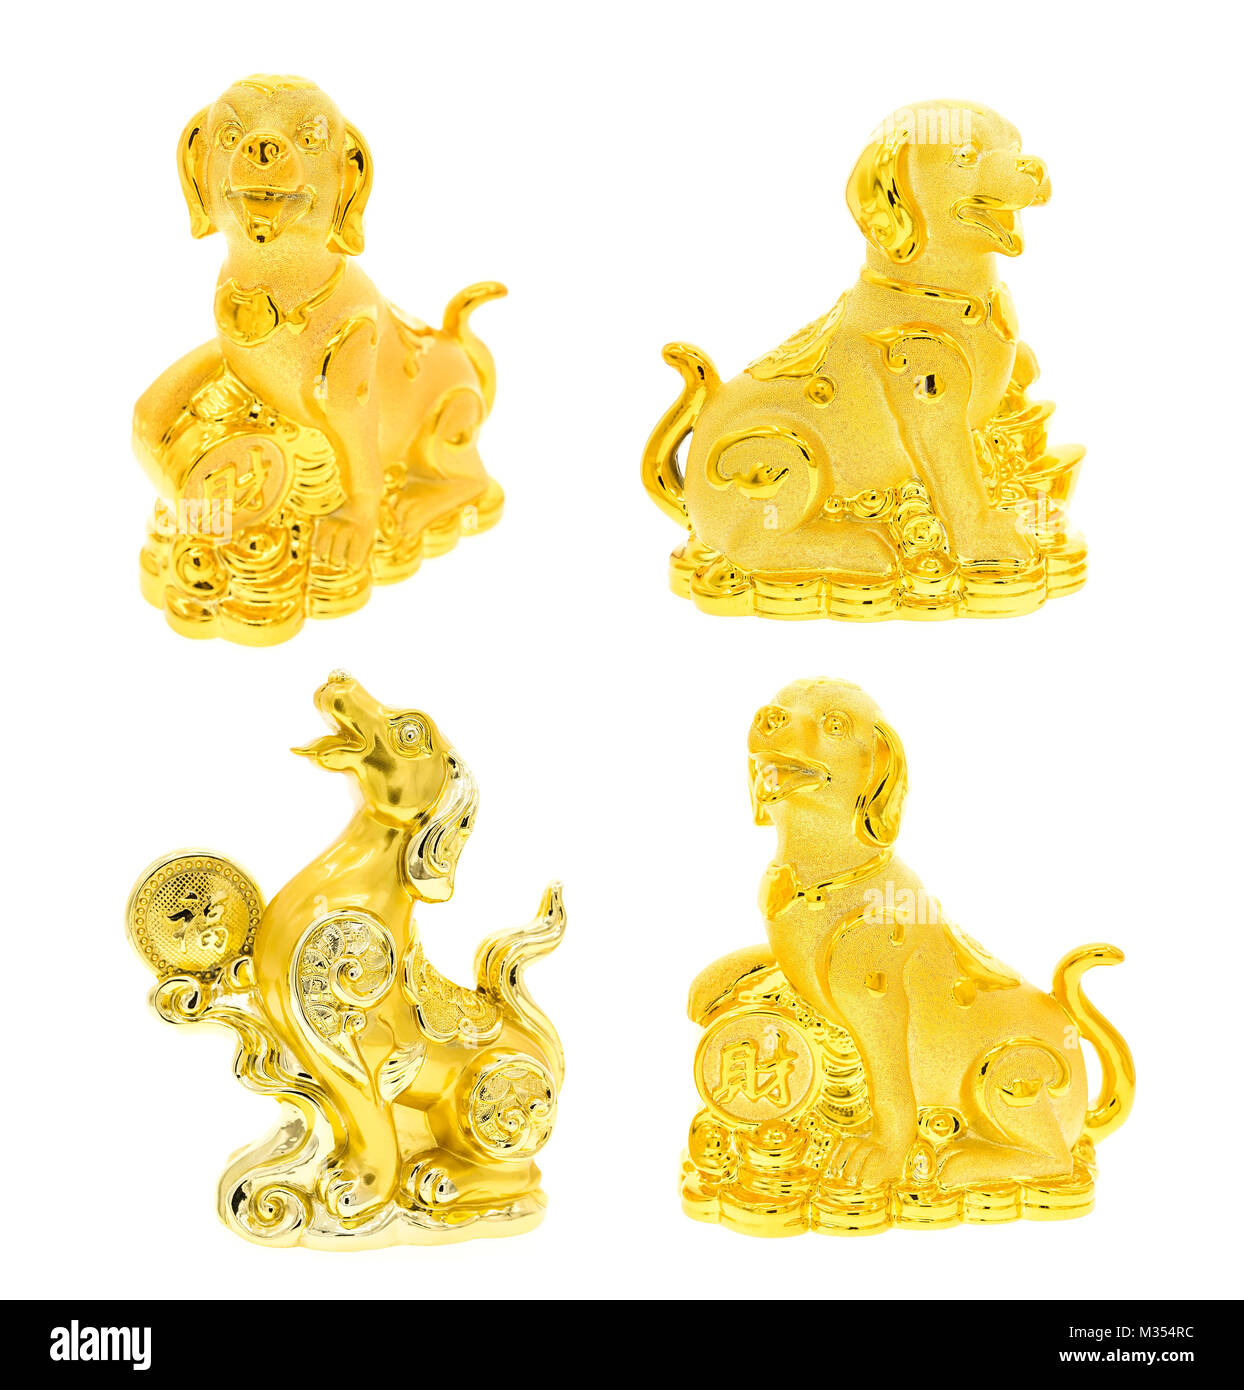 Estatua de perro golden collection en blanco,la caligrafía:buena suerte para el año nuevo Foto de stock